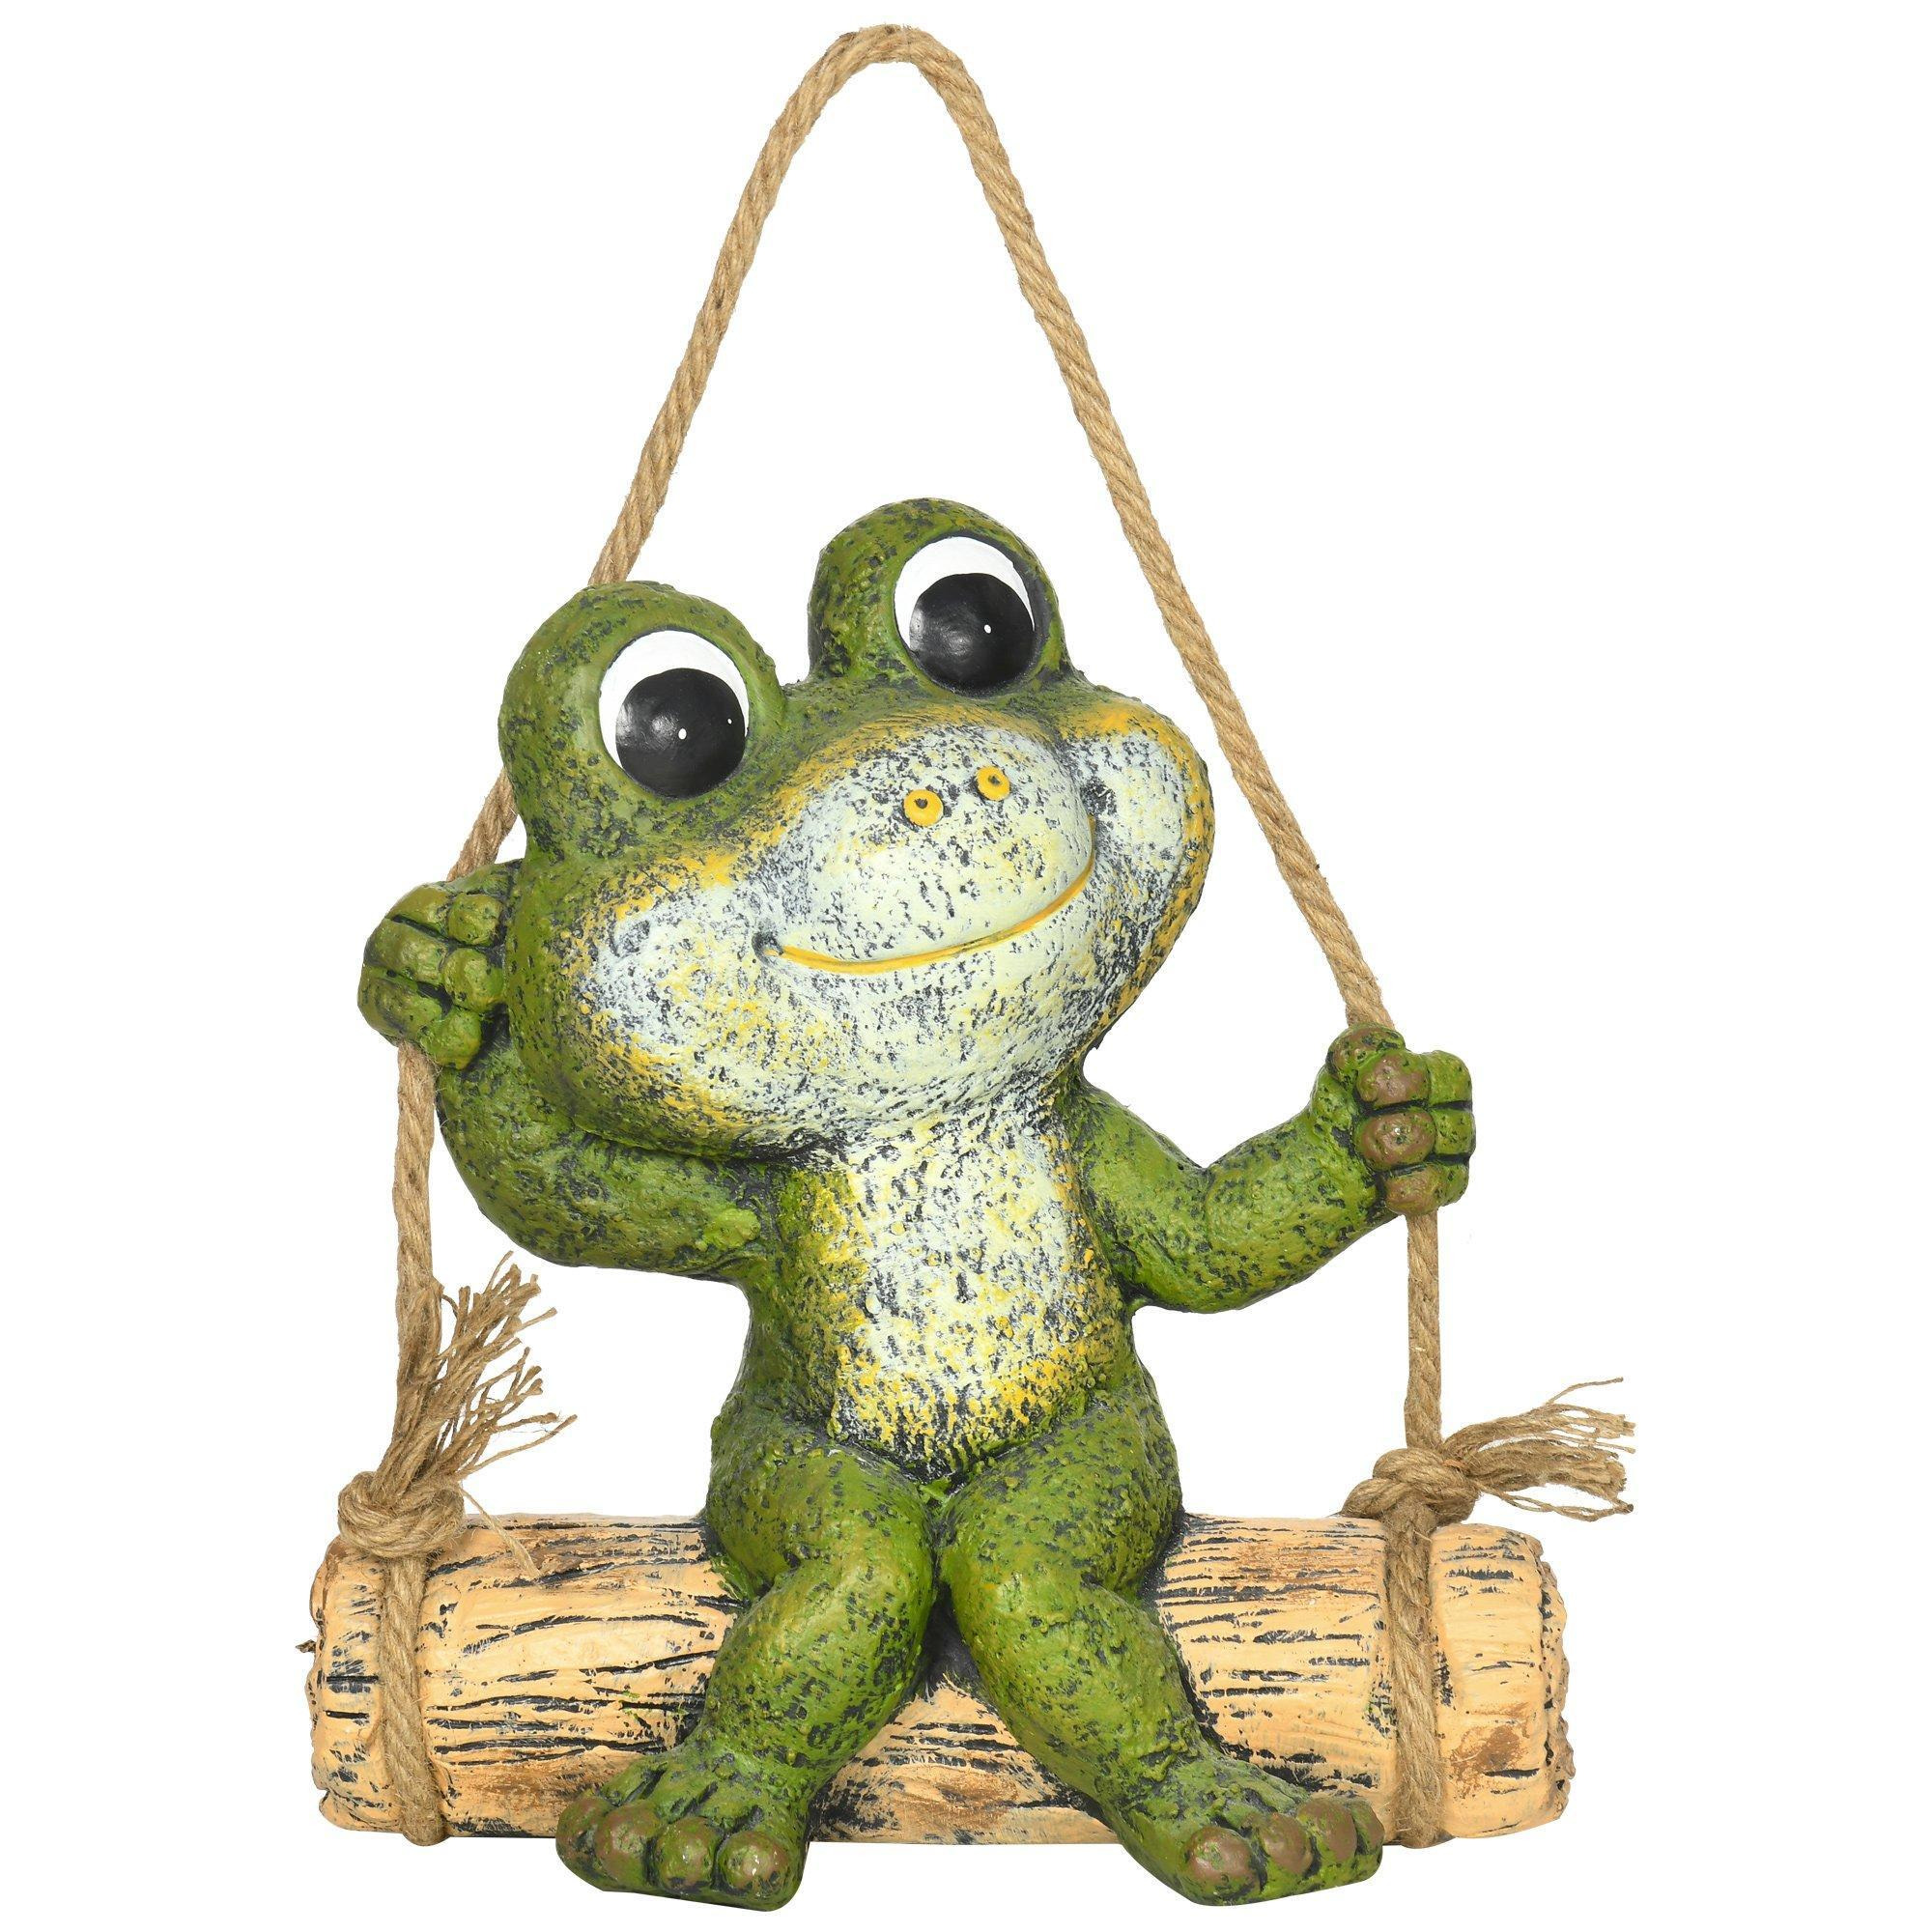 Hanging Garden Statue, Vivid Frog on Swing Art Sculpture Indoor Outdoor Ornament - image 1